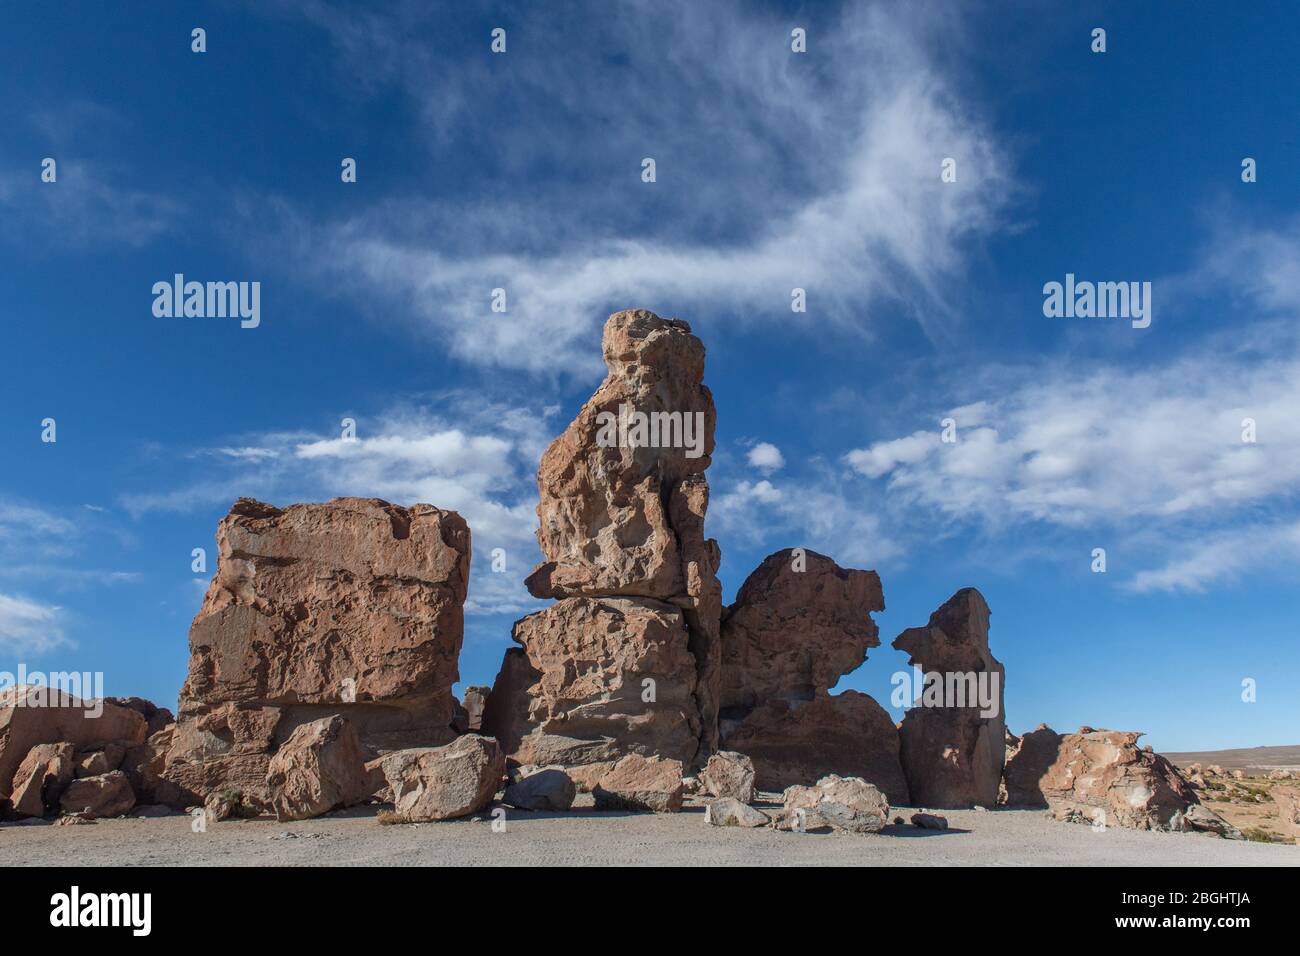 Image d'une des formations rocheuses énormes causées par l'érosion éolienne à Valle de Rocas (Vallée des rochers), Uyuni, Altiplano de Bolivie, Amérique du Sud Banque D'Images